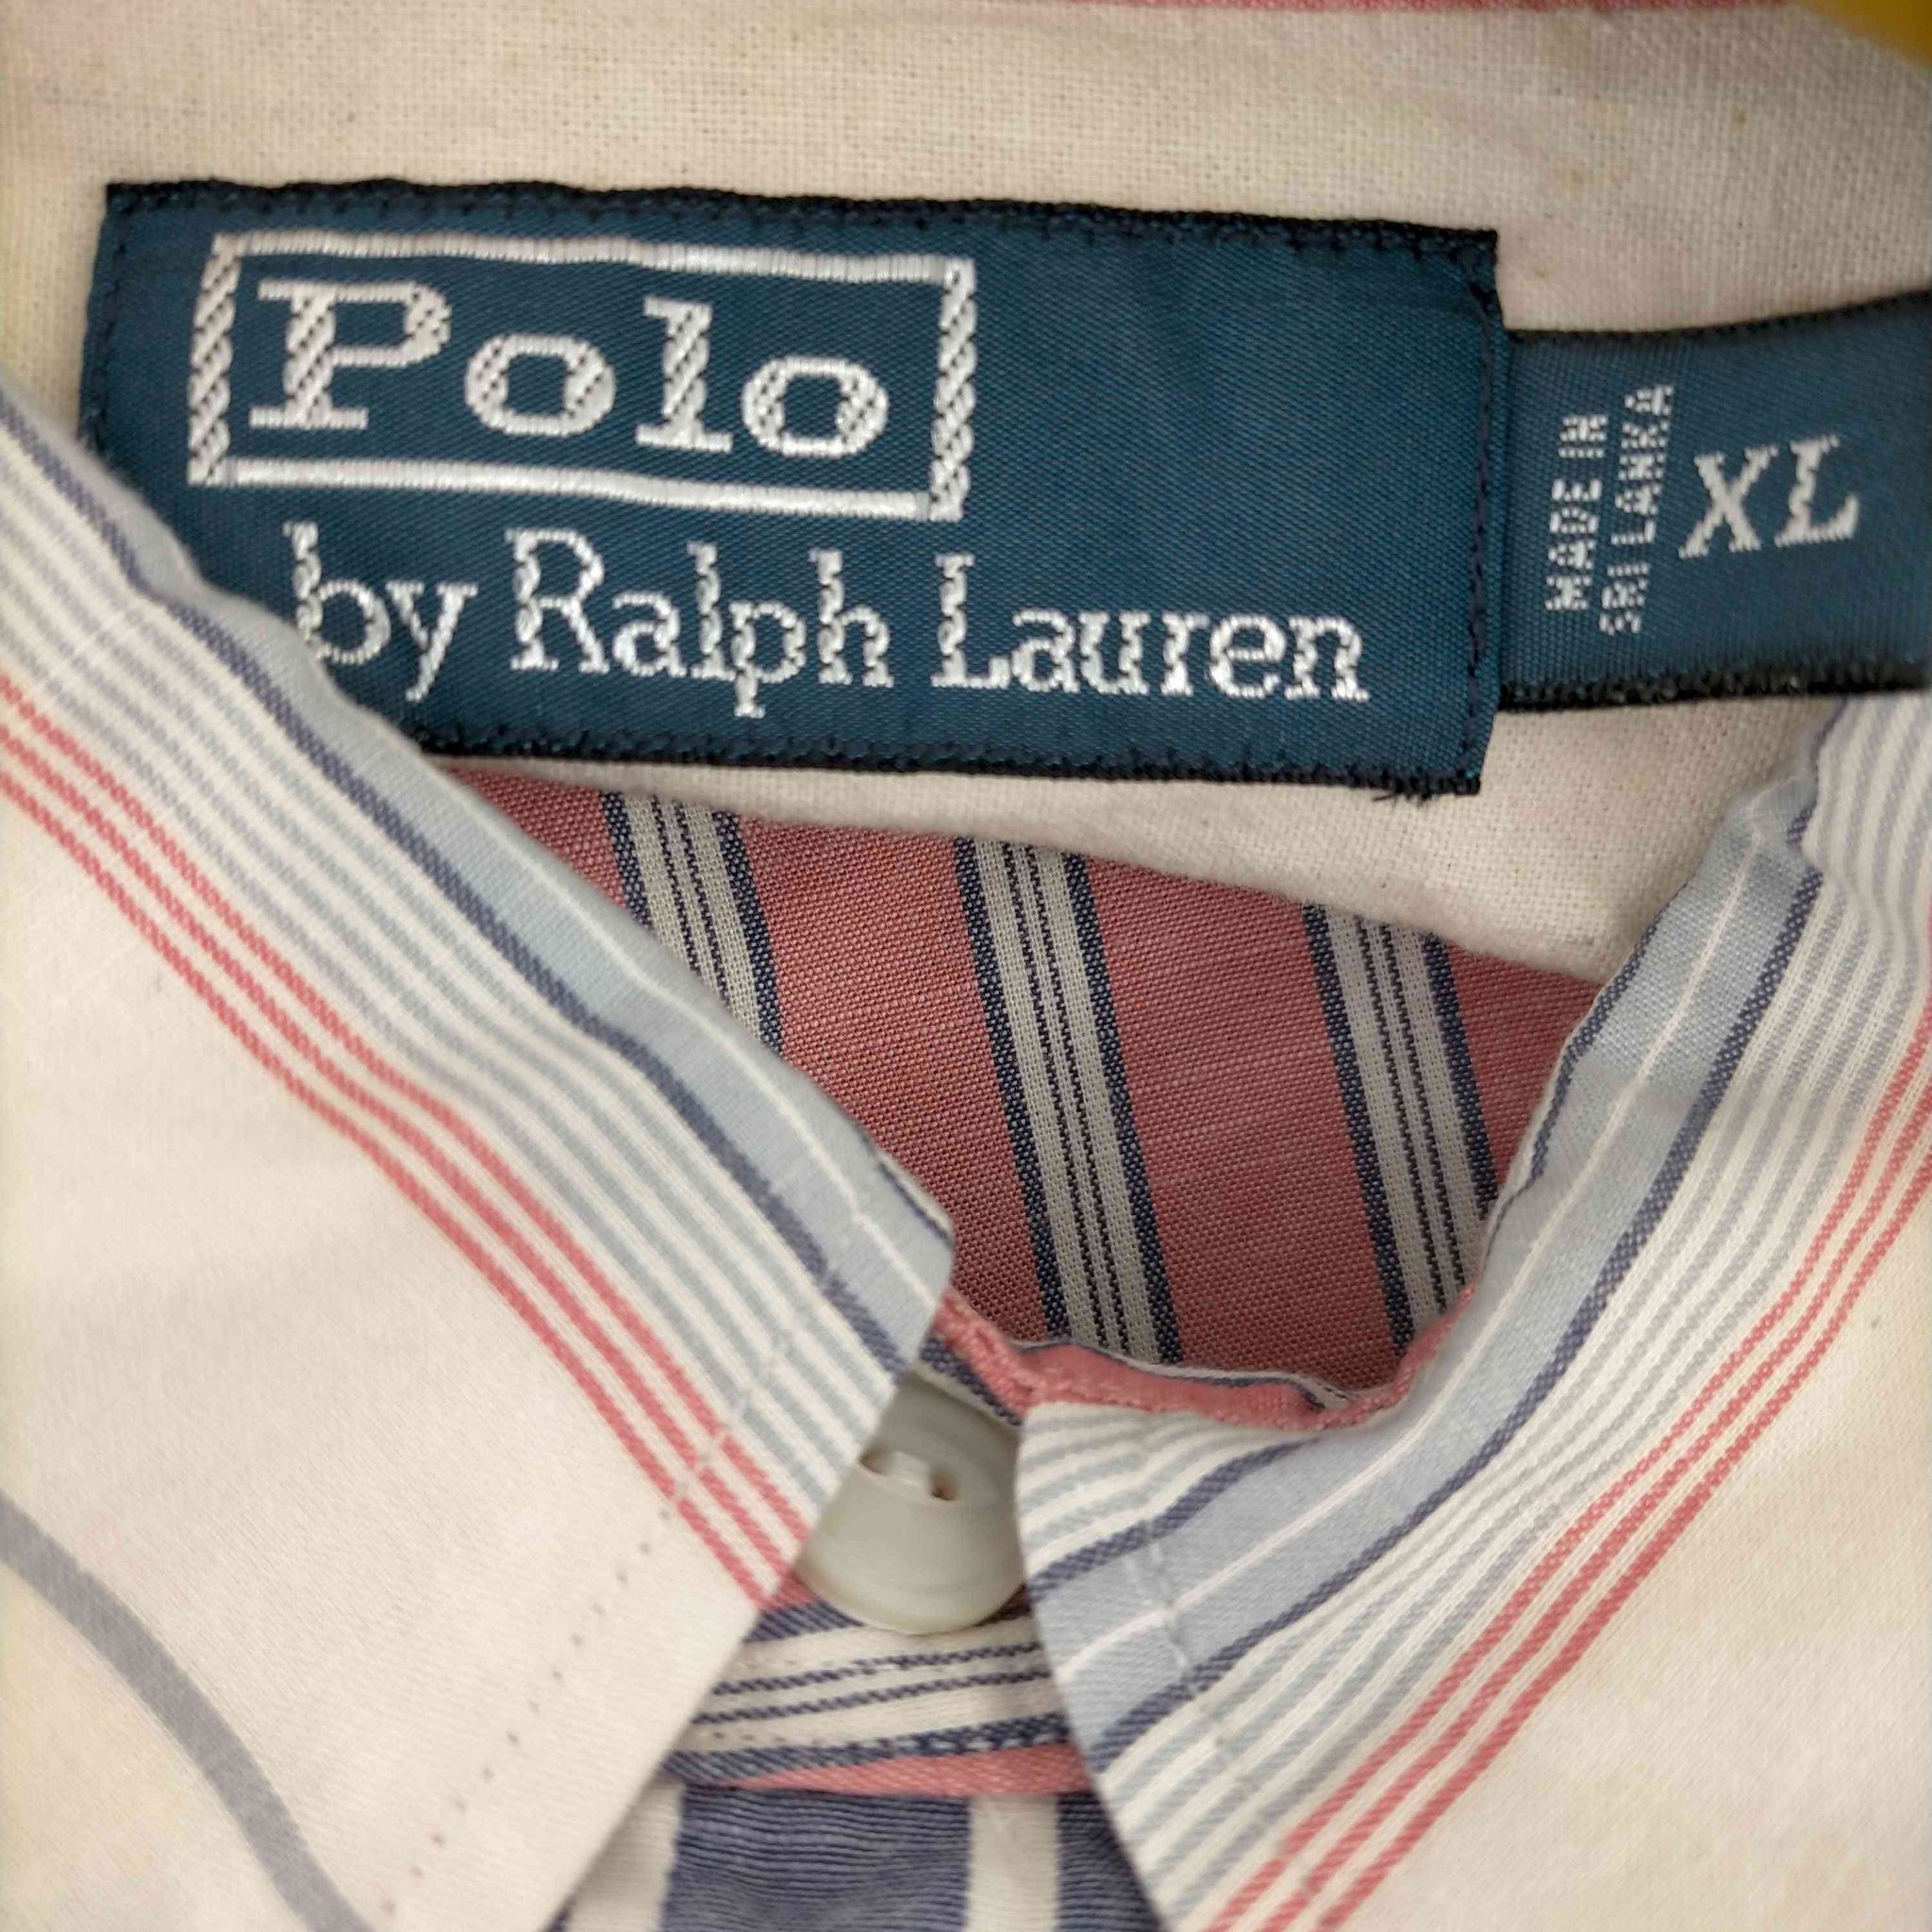 Polo by RALPH LAUREN(ポロバイラルフローレン)90s スリランカ製 ポニー刺繍 マルチカラーストライプシャツ